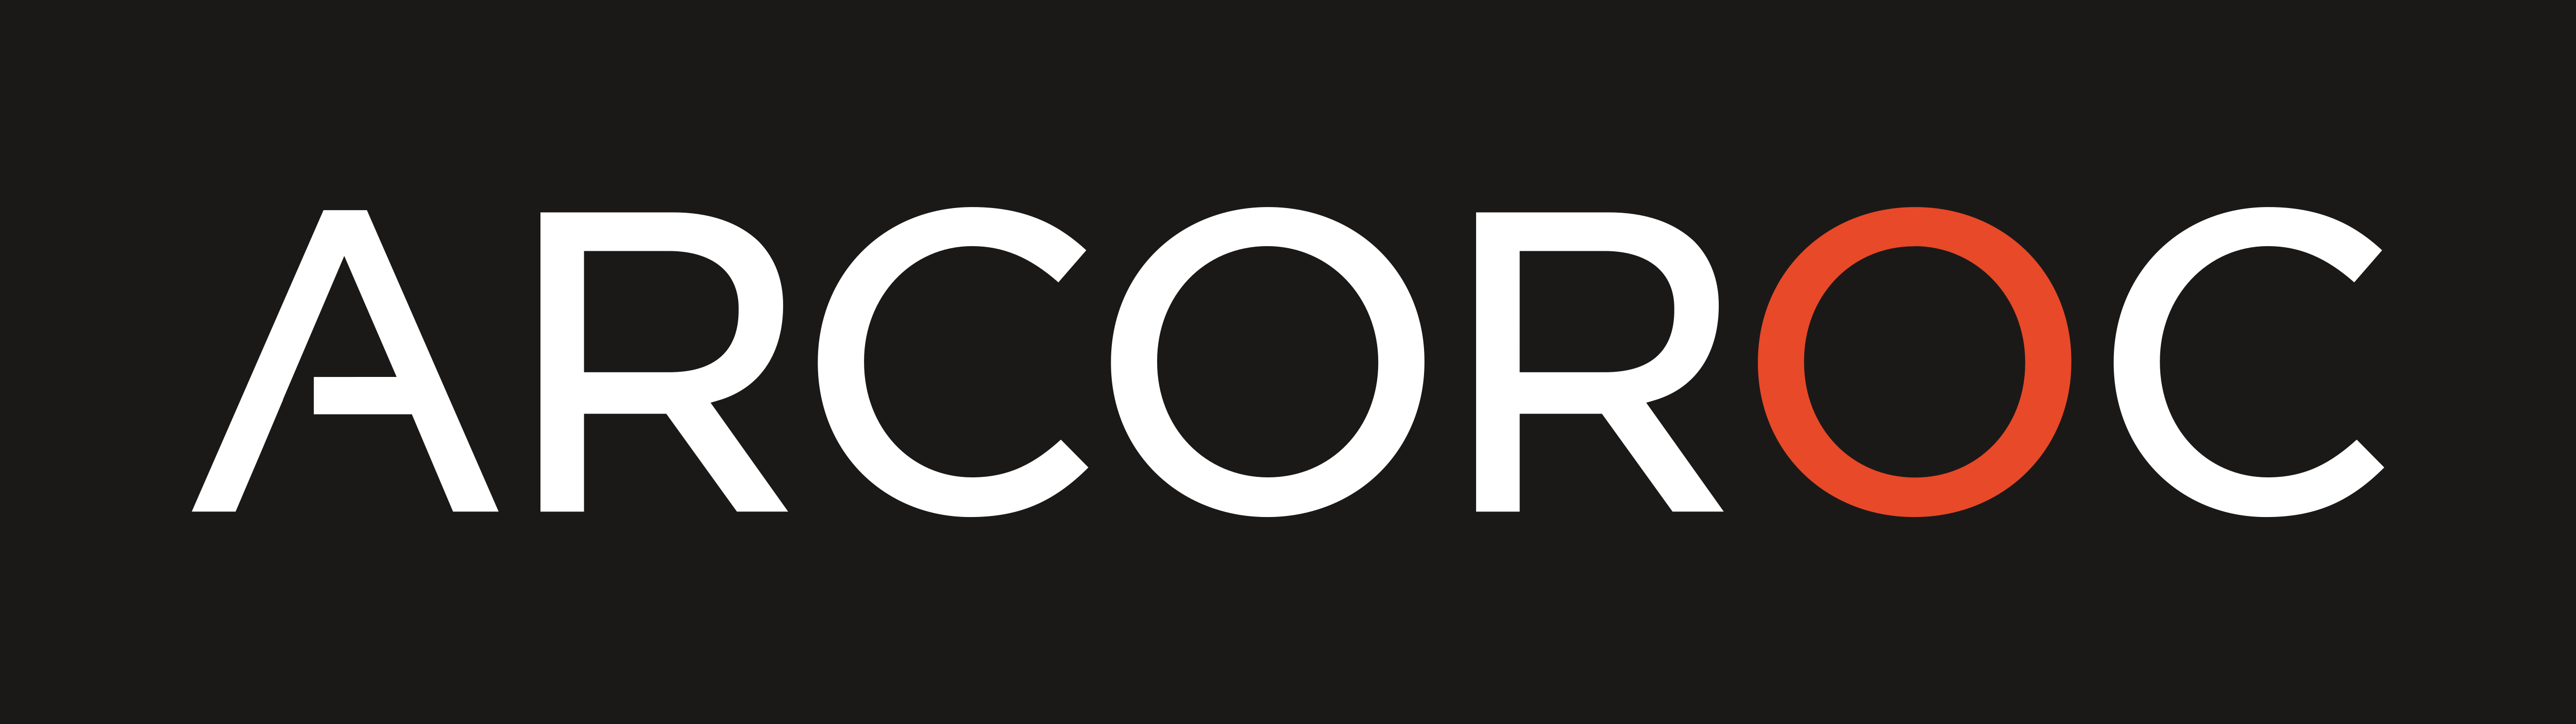 Arcoroc Logo - Home Accessories